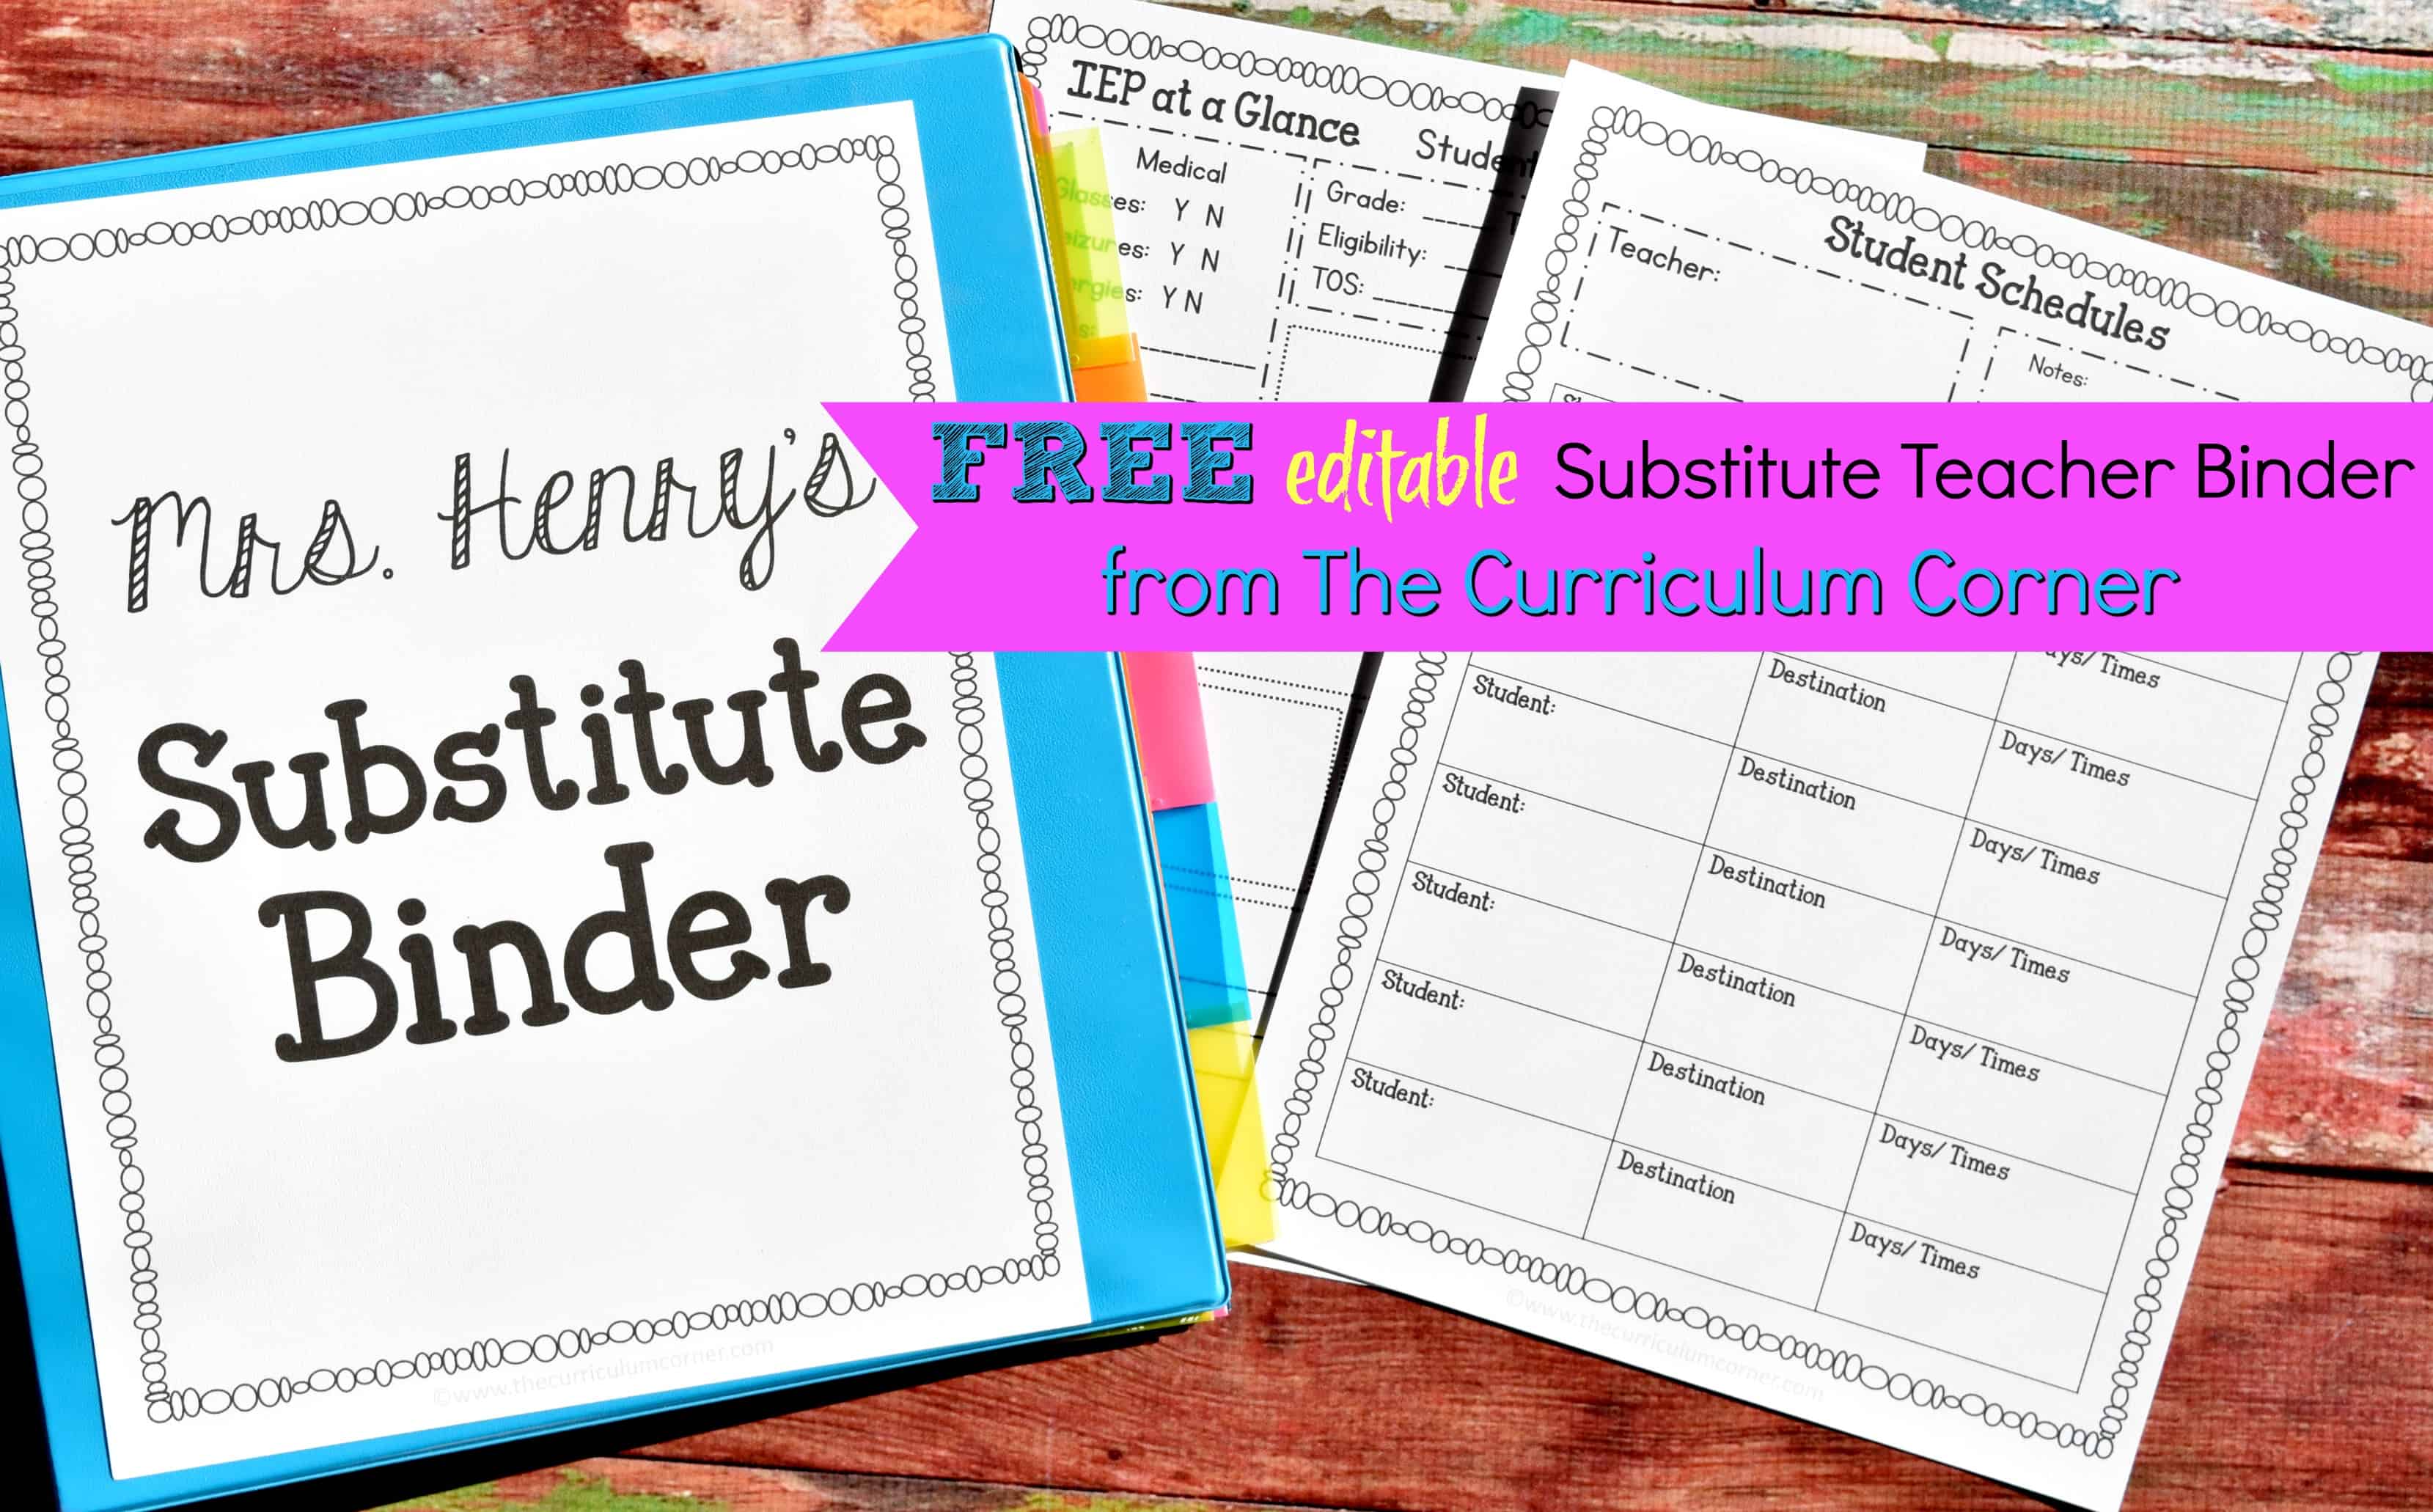 Editable Substitute Planning Binder The Curriculum Corner 123